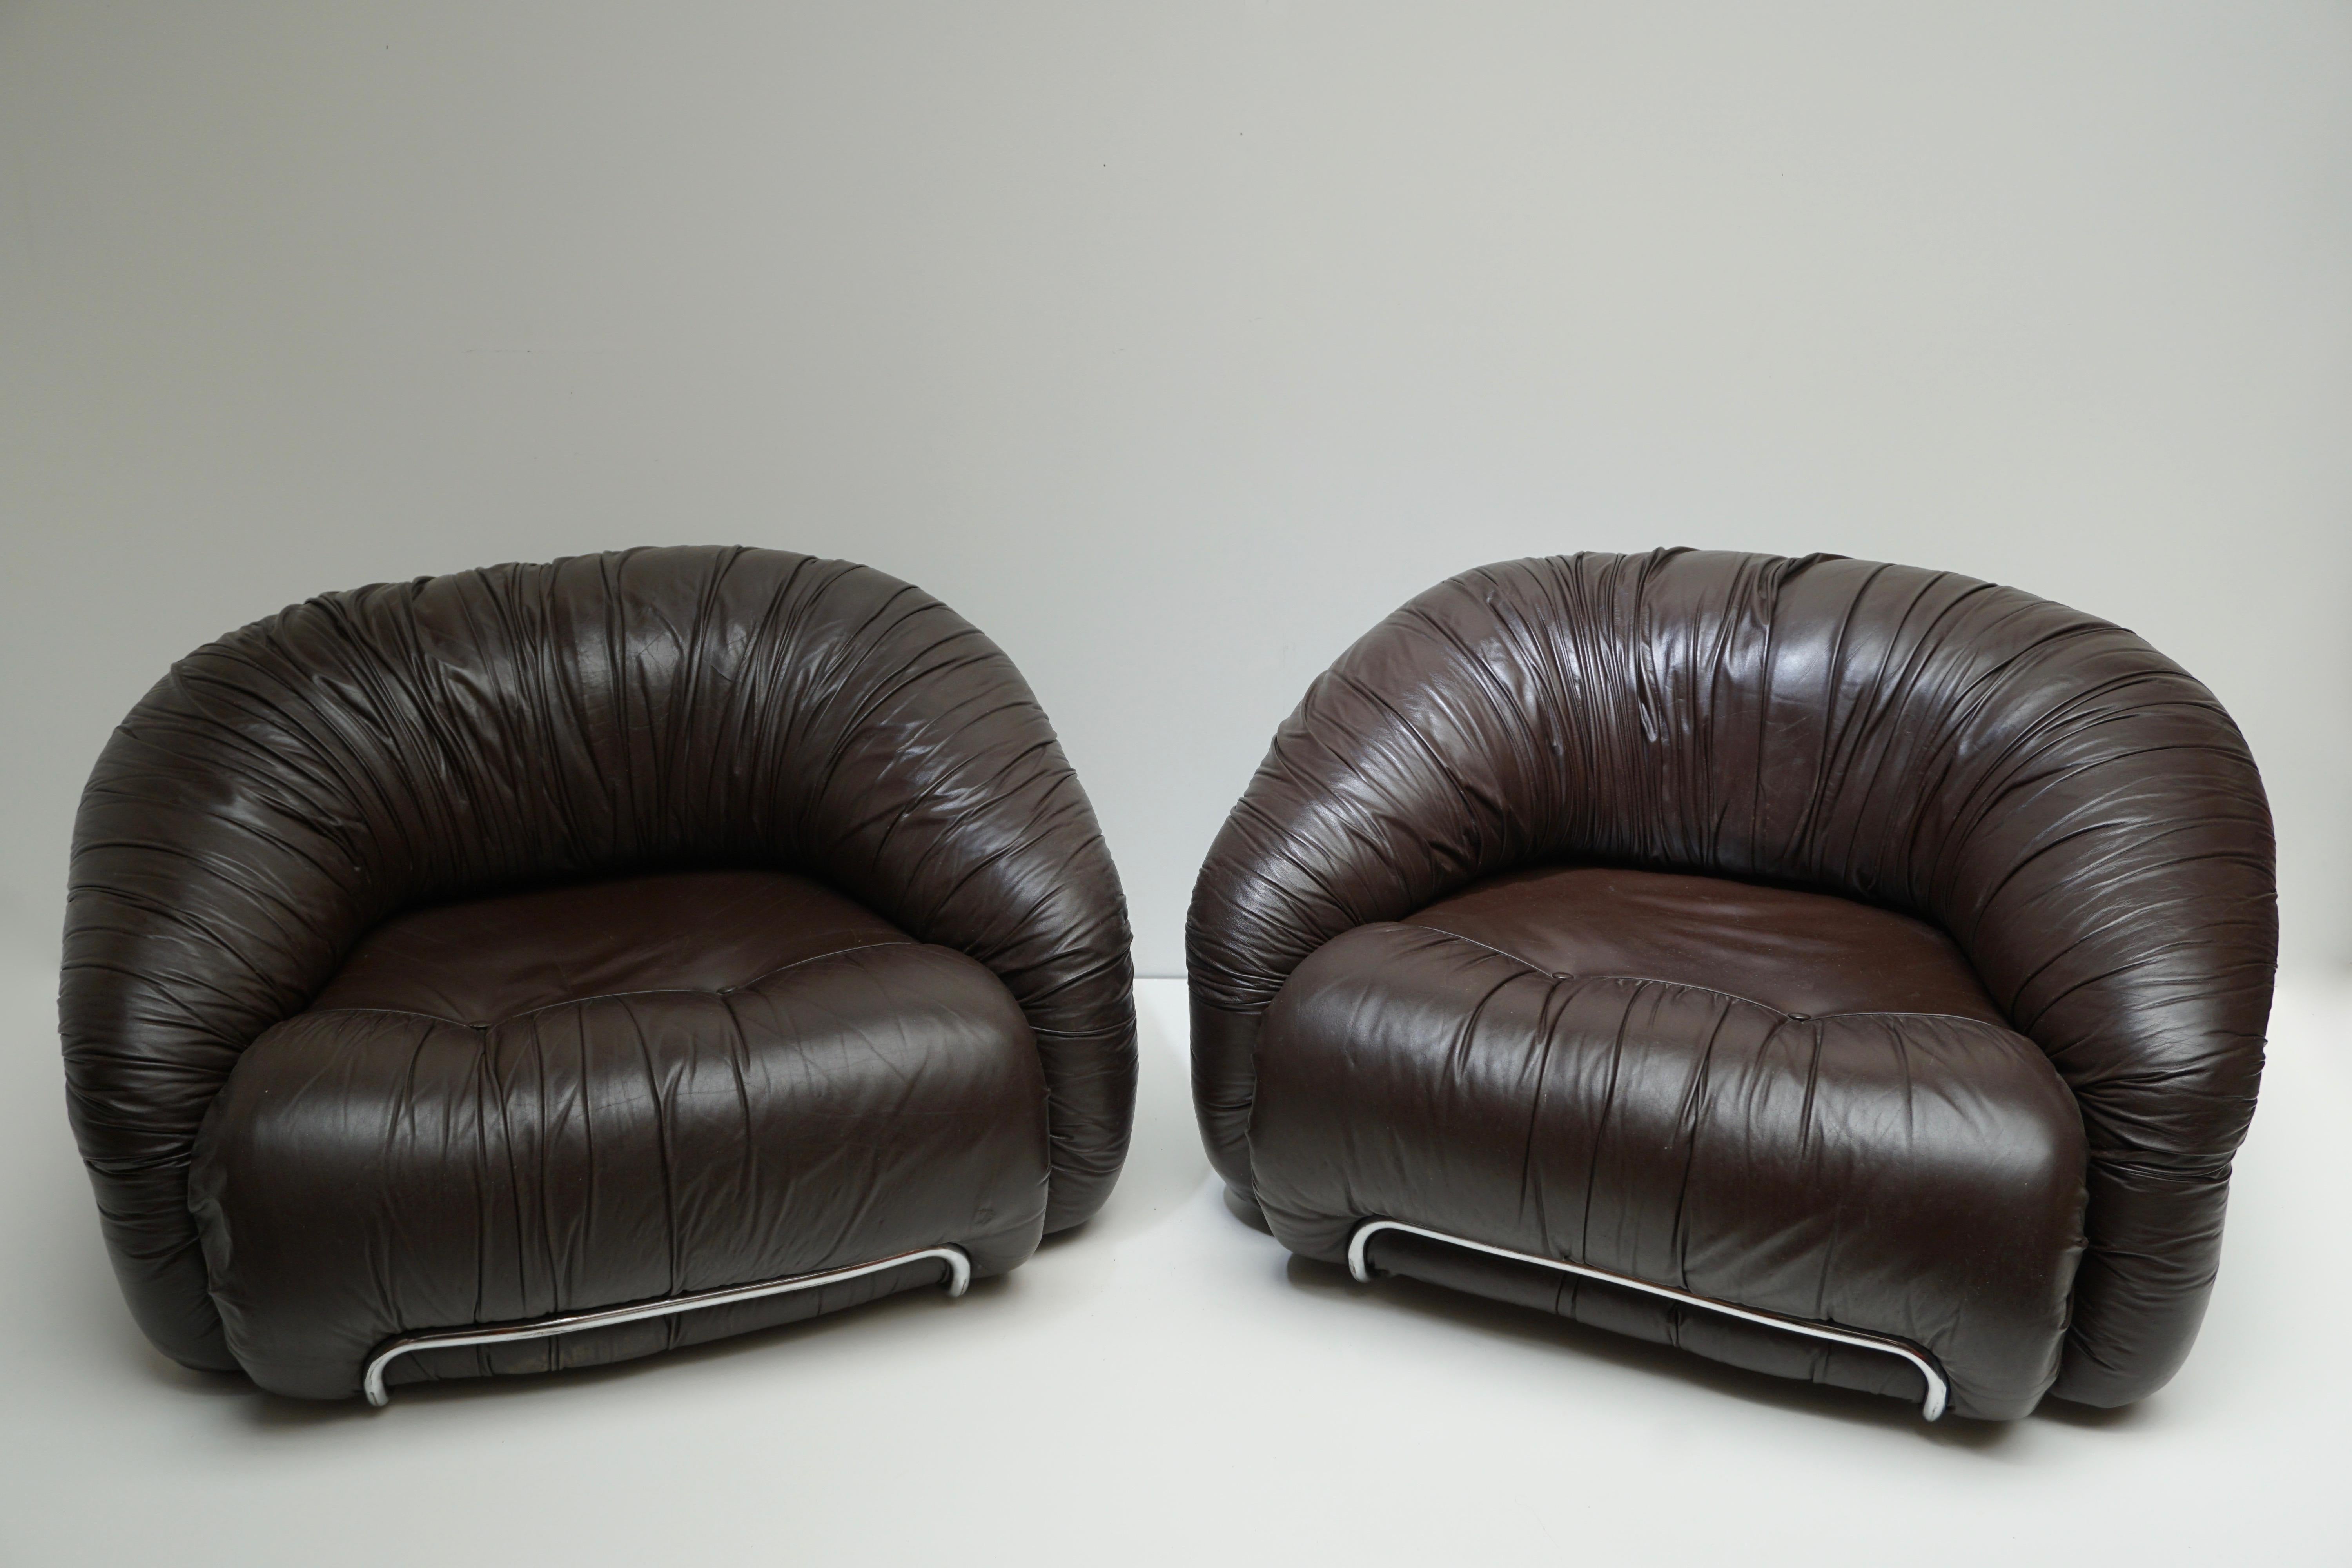 Un fauteuil de salon / fauteuil club dans le style de Gianfranco Frattini. Chaque fauteuil de salon présente le revêtement original en cuir brun dans des cadres tubulaires chromés. Fabriqué en Italie, vers les années 1970.

Le fauteuil qui est